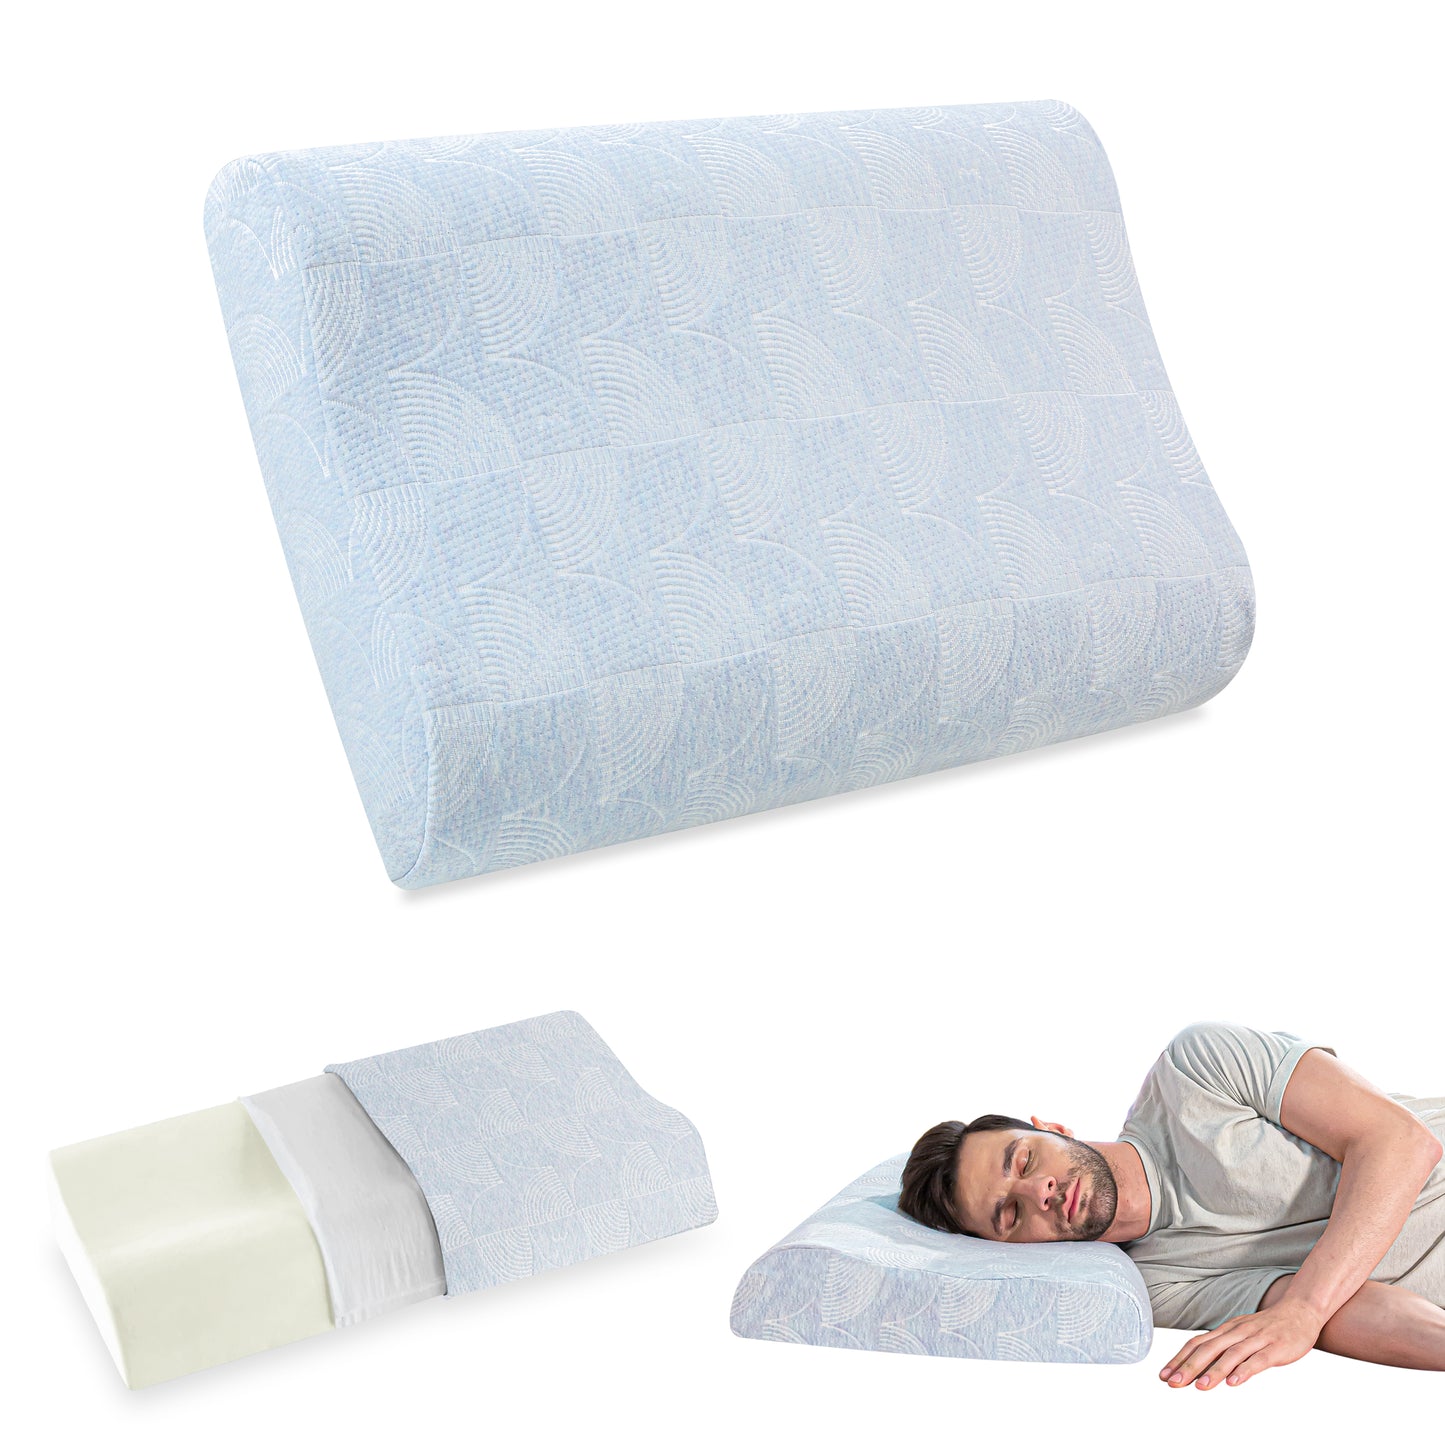 Original Contour Pillow- Memory Foam- Medium Firm